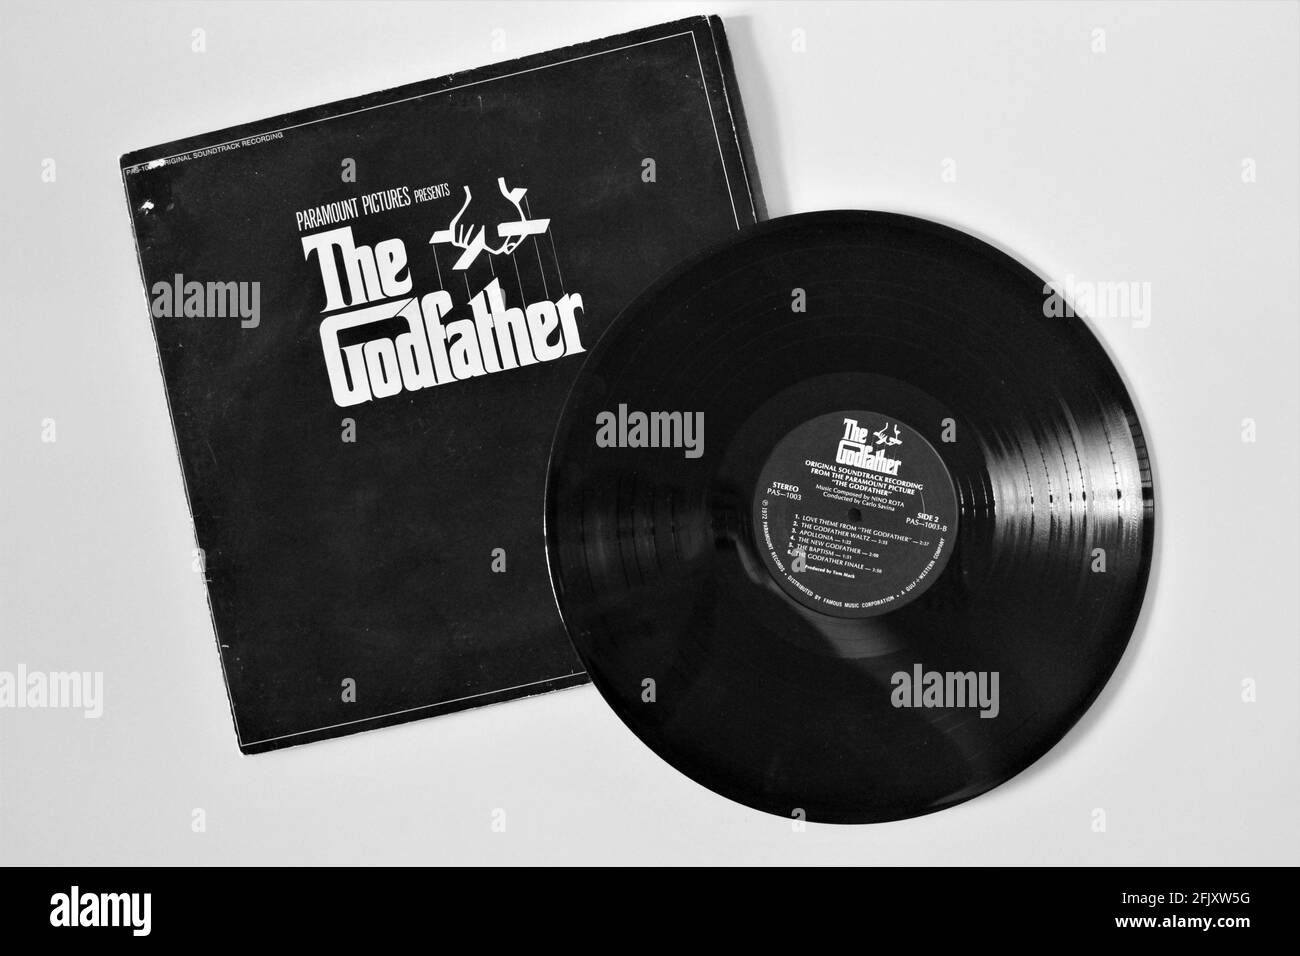 The Godfather Movie Soundtrack Musikalbum auf Vinyl-LP Disc auf weißem, isoliertem Hintergrund Stockfoto